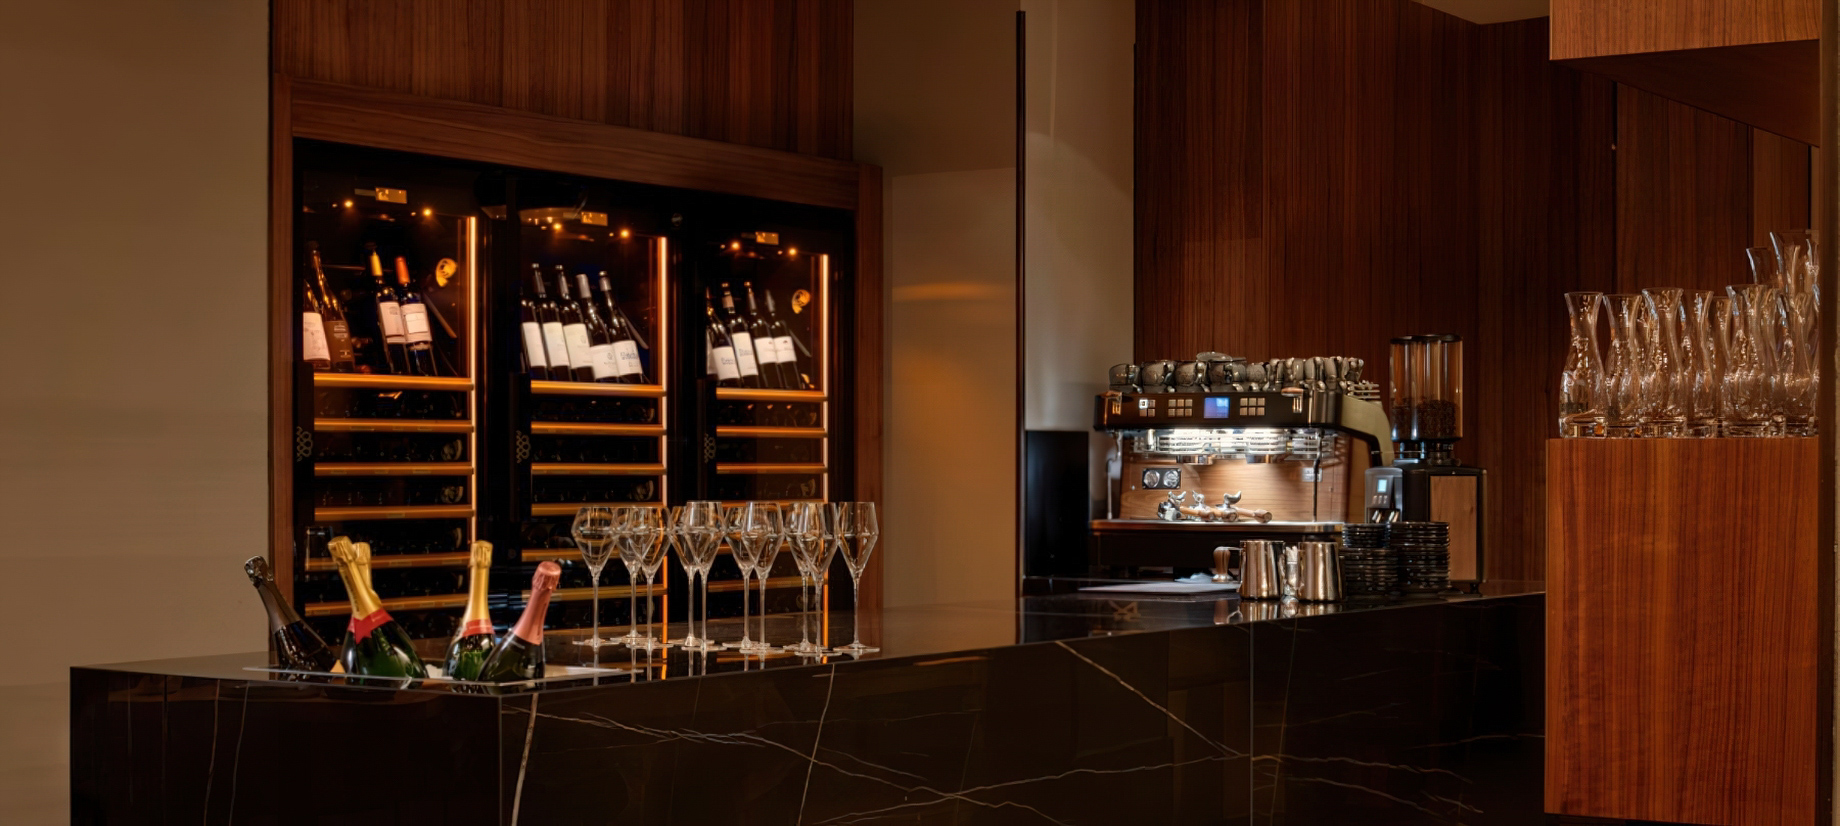 The Ritz-Carlton, Vienna Hotel – Vienna, Austria – Dstrikt Steakhouse Counter